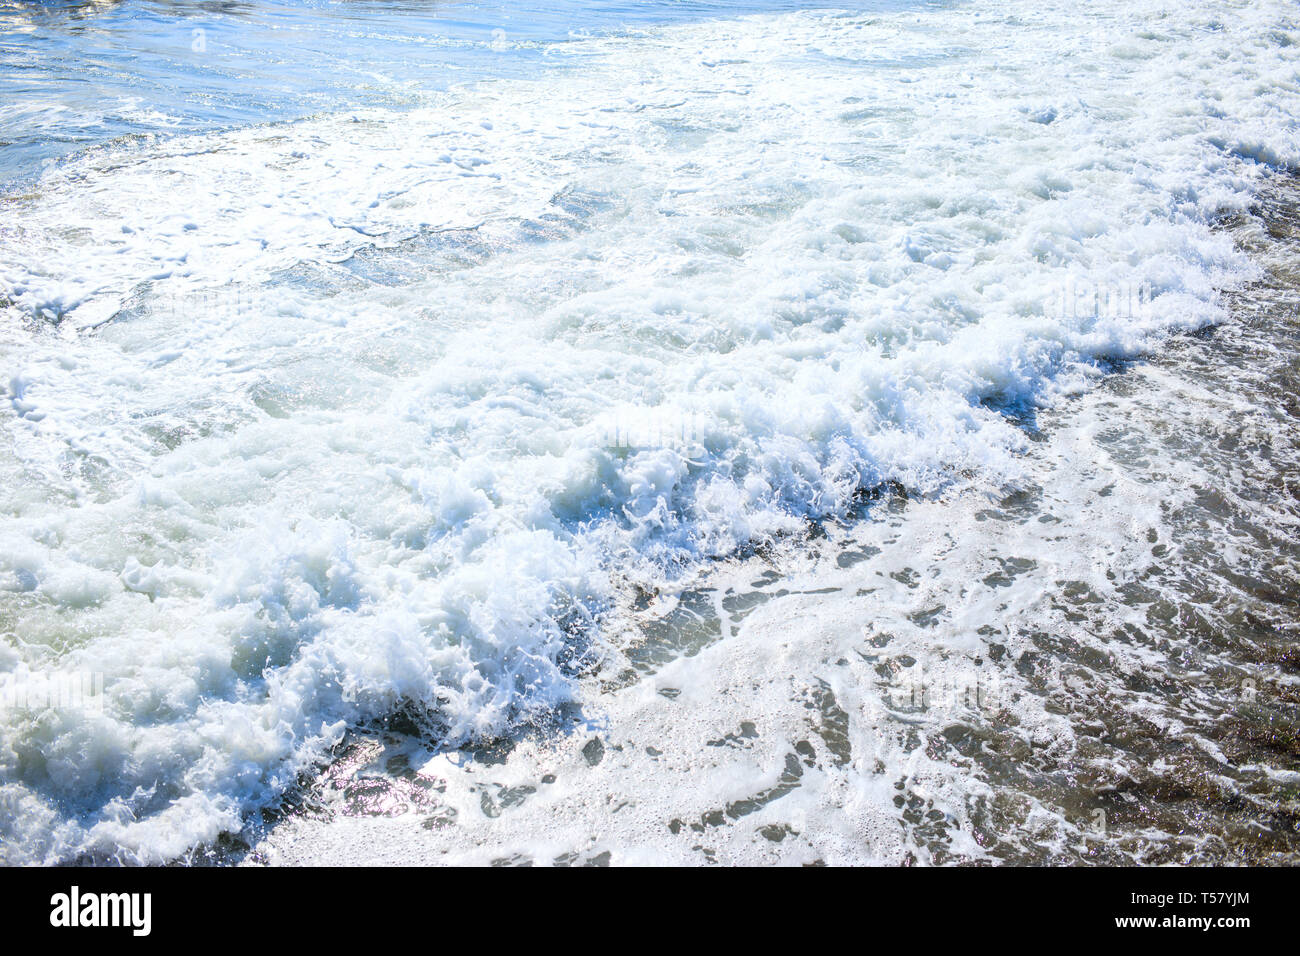 Schöne Aussicht auf das Spritzen blauen Wellen in der Nähe des Strandes. Meer Landschaft. Stockfoto